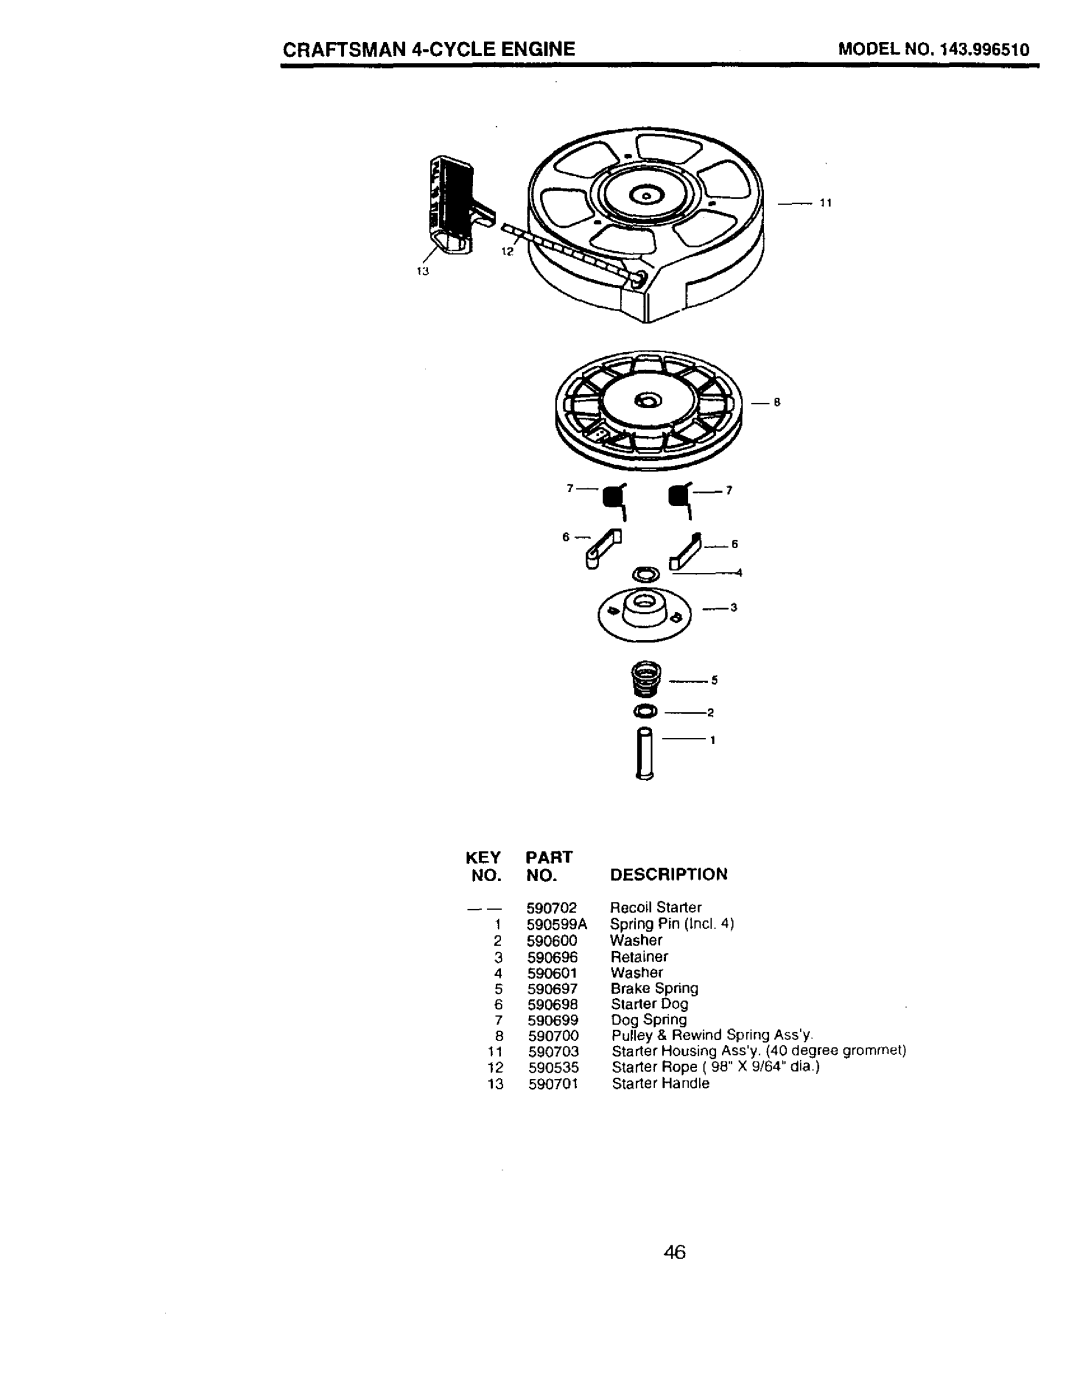 Craftsman 917.377544 owner manual CRAFTSMAN 4-CYCLE ENGINE, Model No, Key Part No. No. Description 